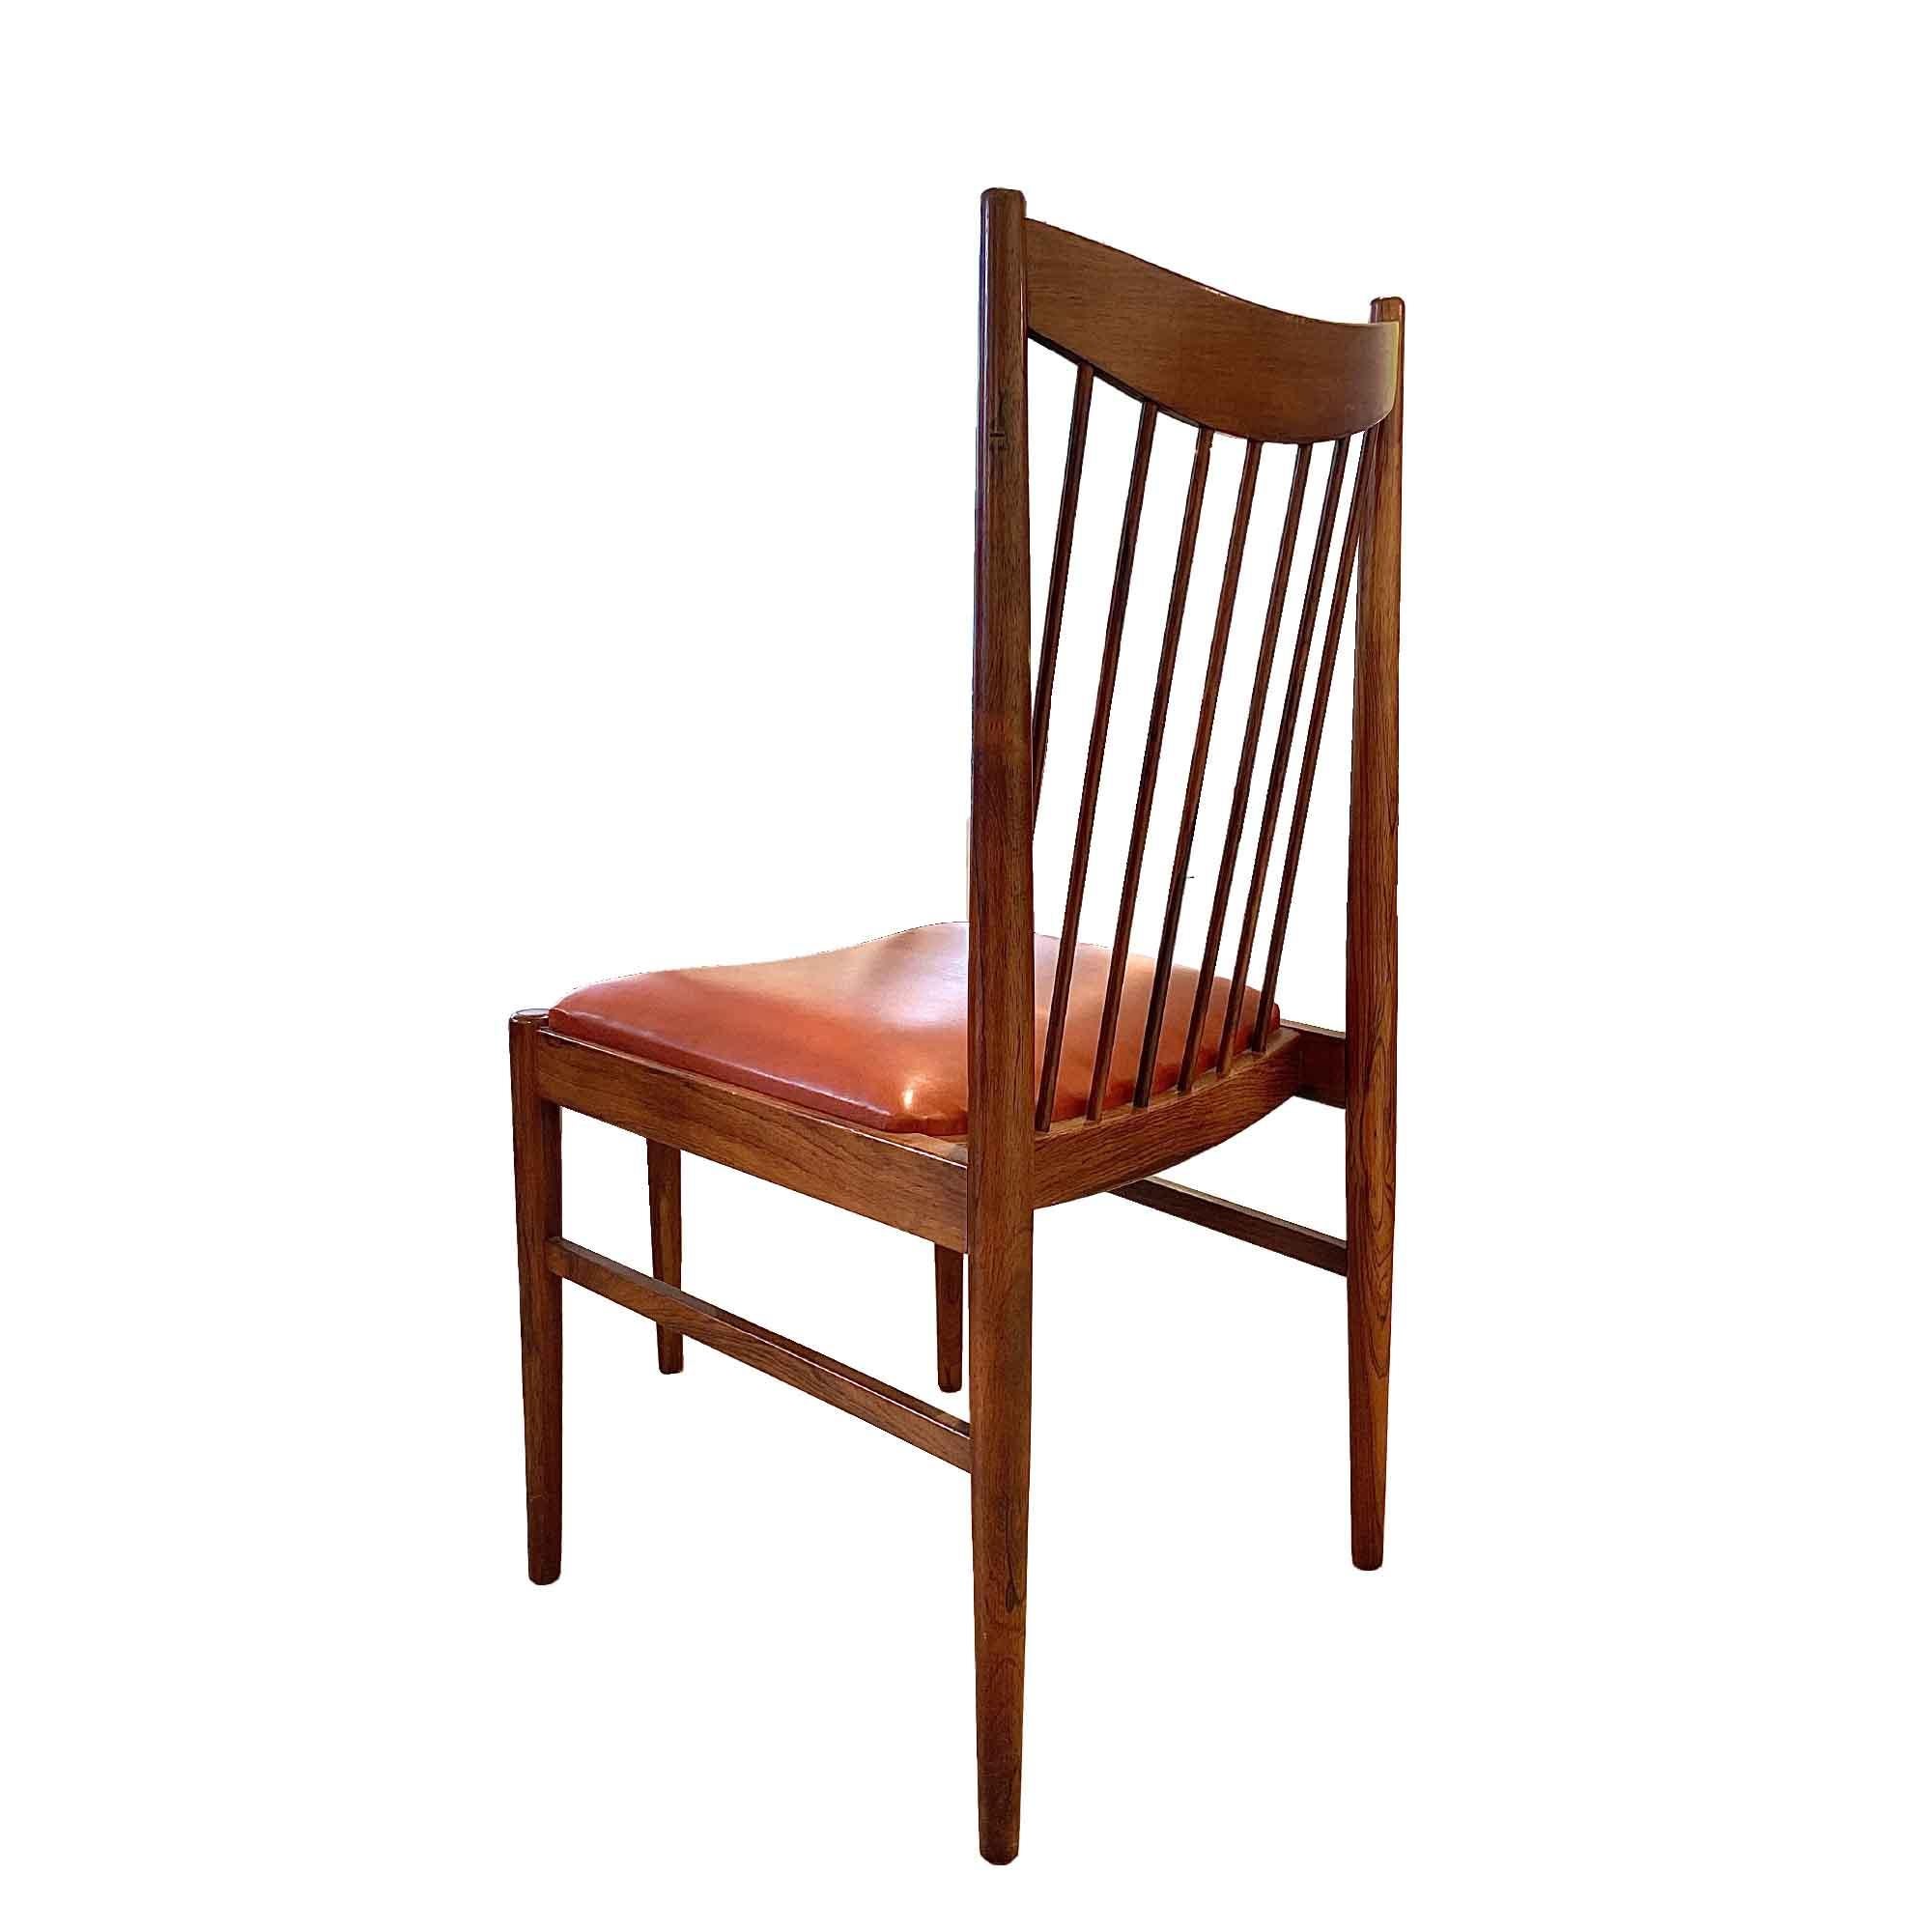 4 Stühle aus massivem Palisanderholz und Original-Leder, von dem großen dänischen Designer Arne Vodder.
Ihre grafische Form, die sowohl raffiniert als auch durchsetzungsfähig ist, sowie ihre schöne Lederpatina verleihen diesen Stühlen einen subtilen